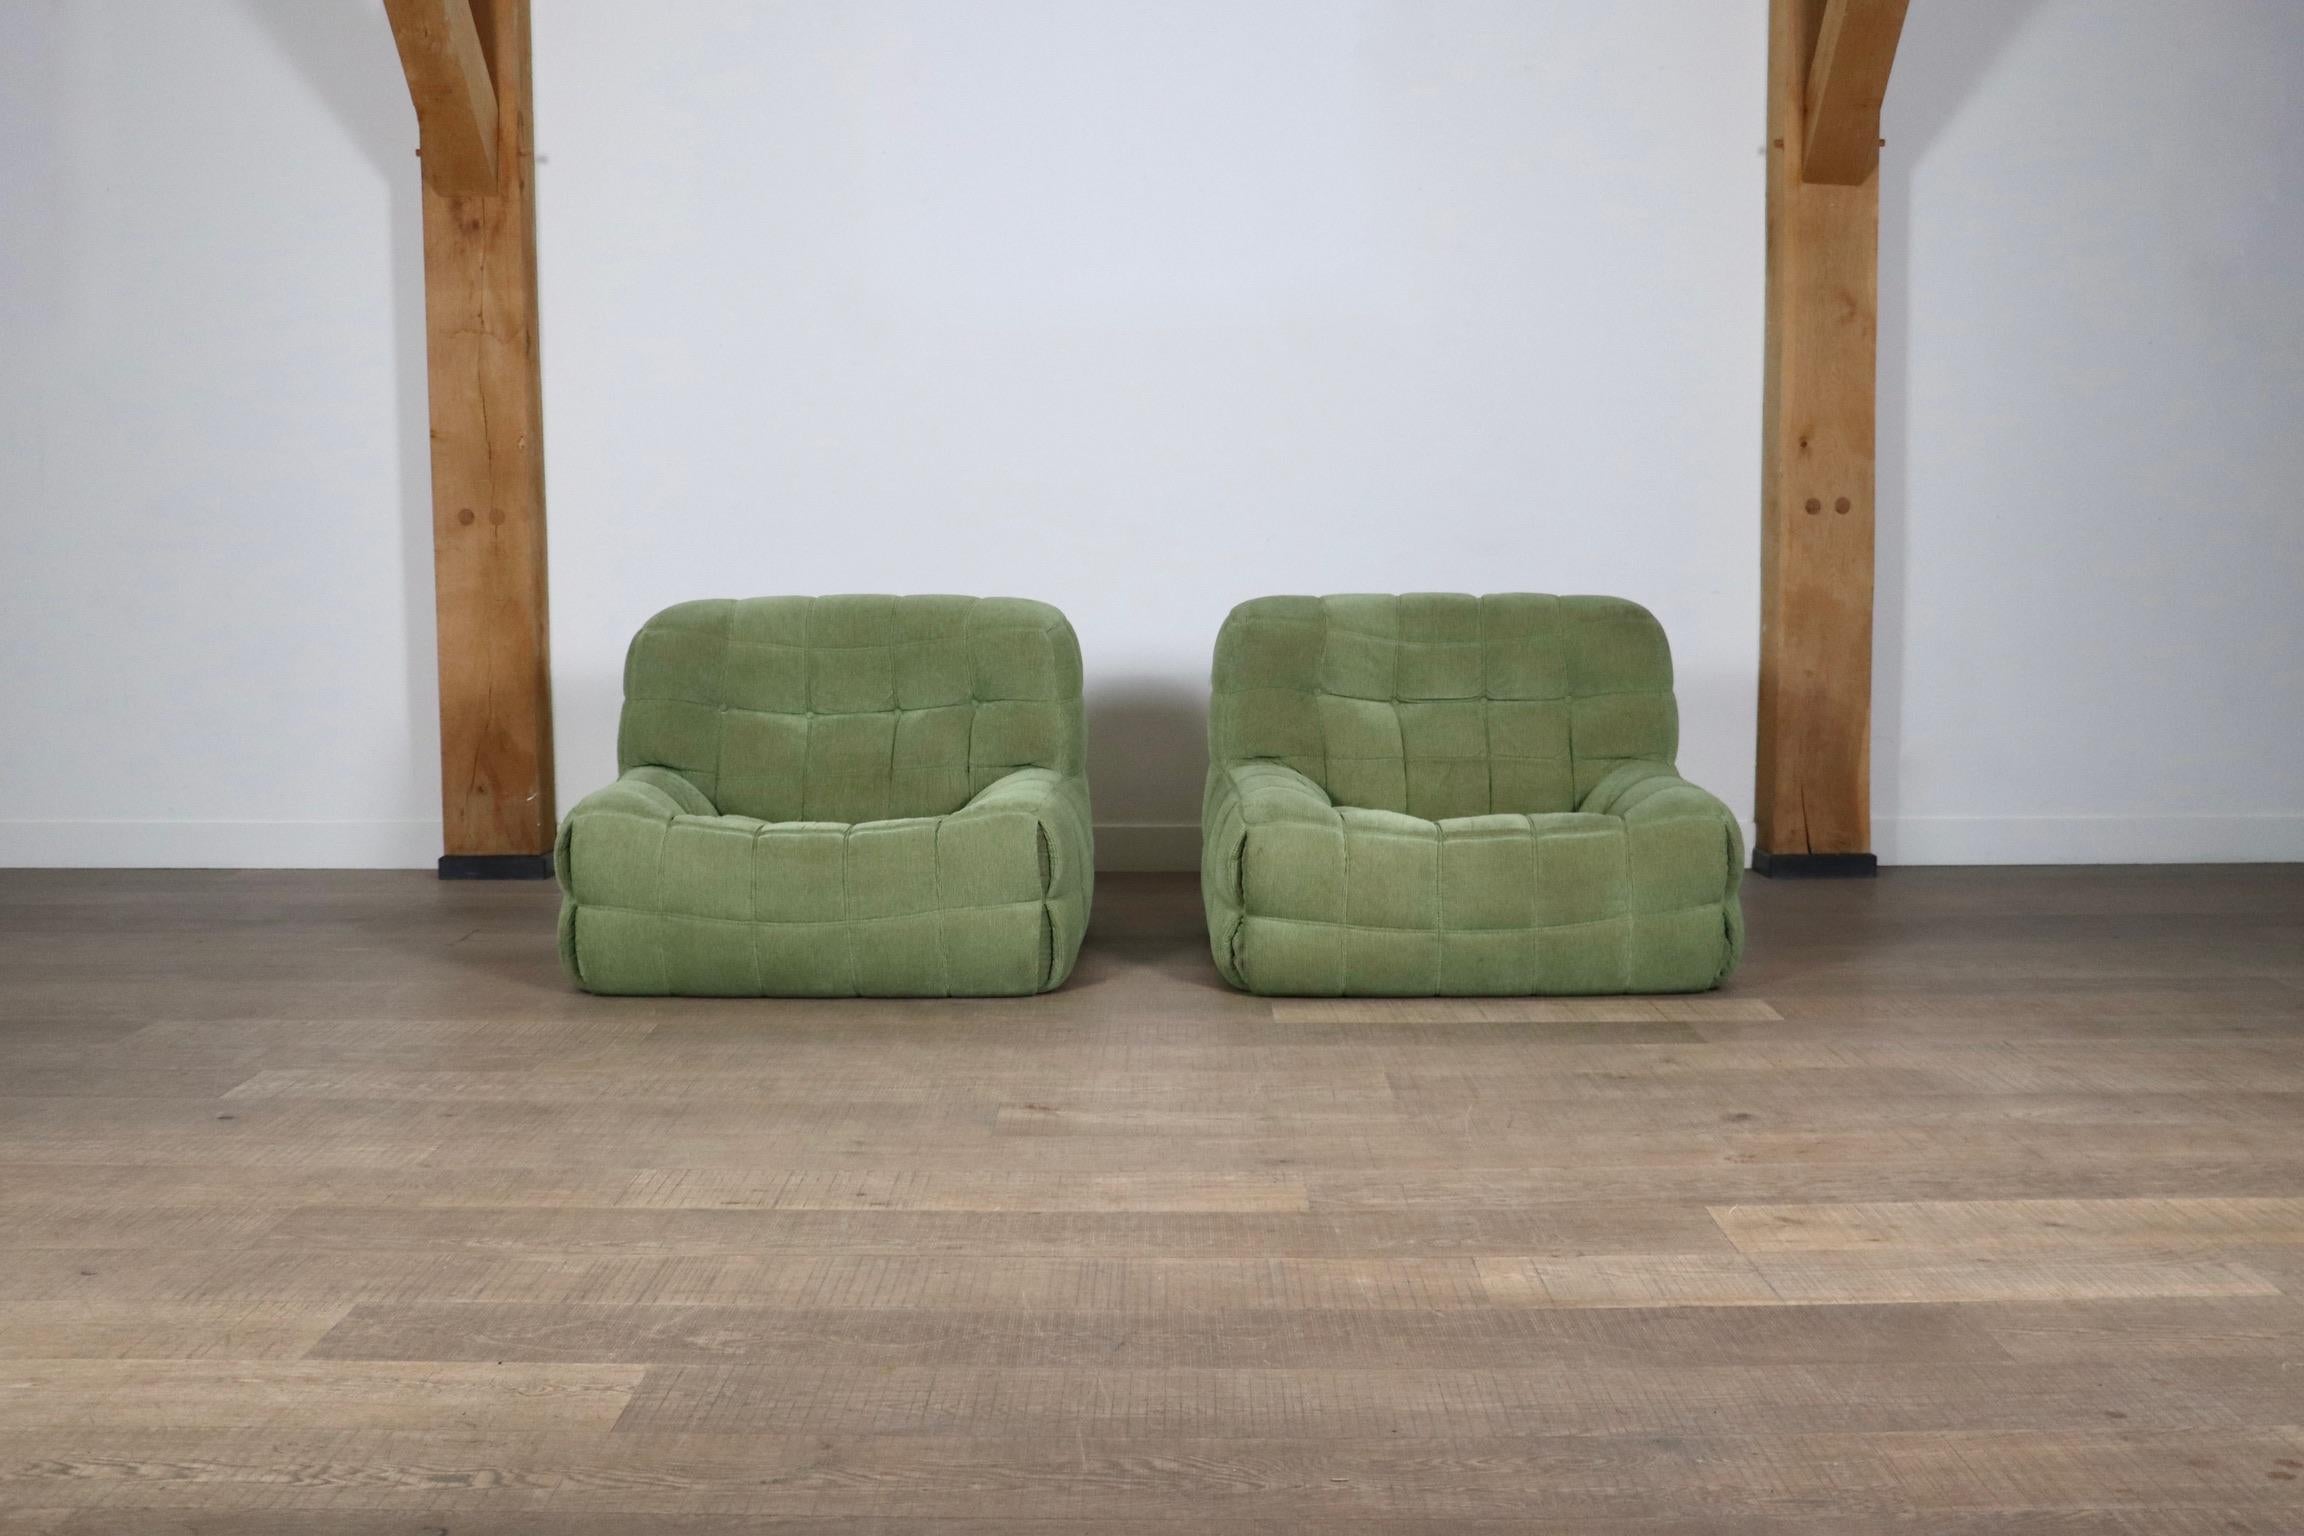 Erstaunliches Paar originaler Ligne Roset Kashima Lounge Chairs von Michel Ducaroy, Frankreich 1970er Jahre.
Das schöne, leichte Design ist sowohl sehr bequem als auch schön anzusehen in der schönen originalen grünen Samtbespannung. Der